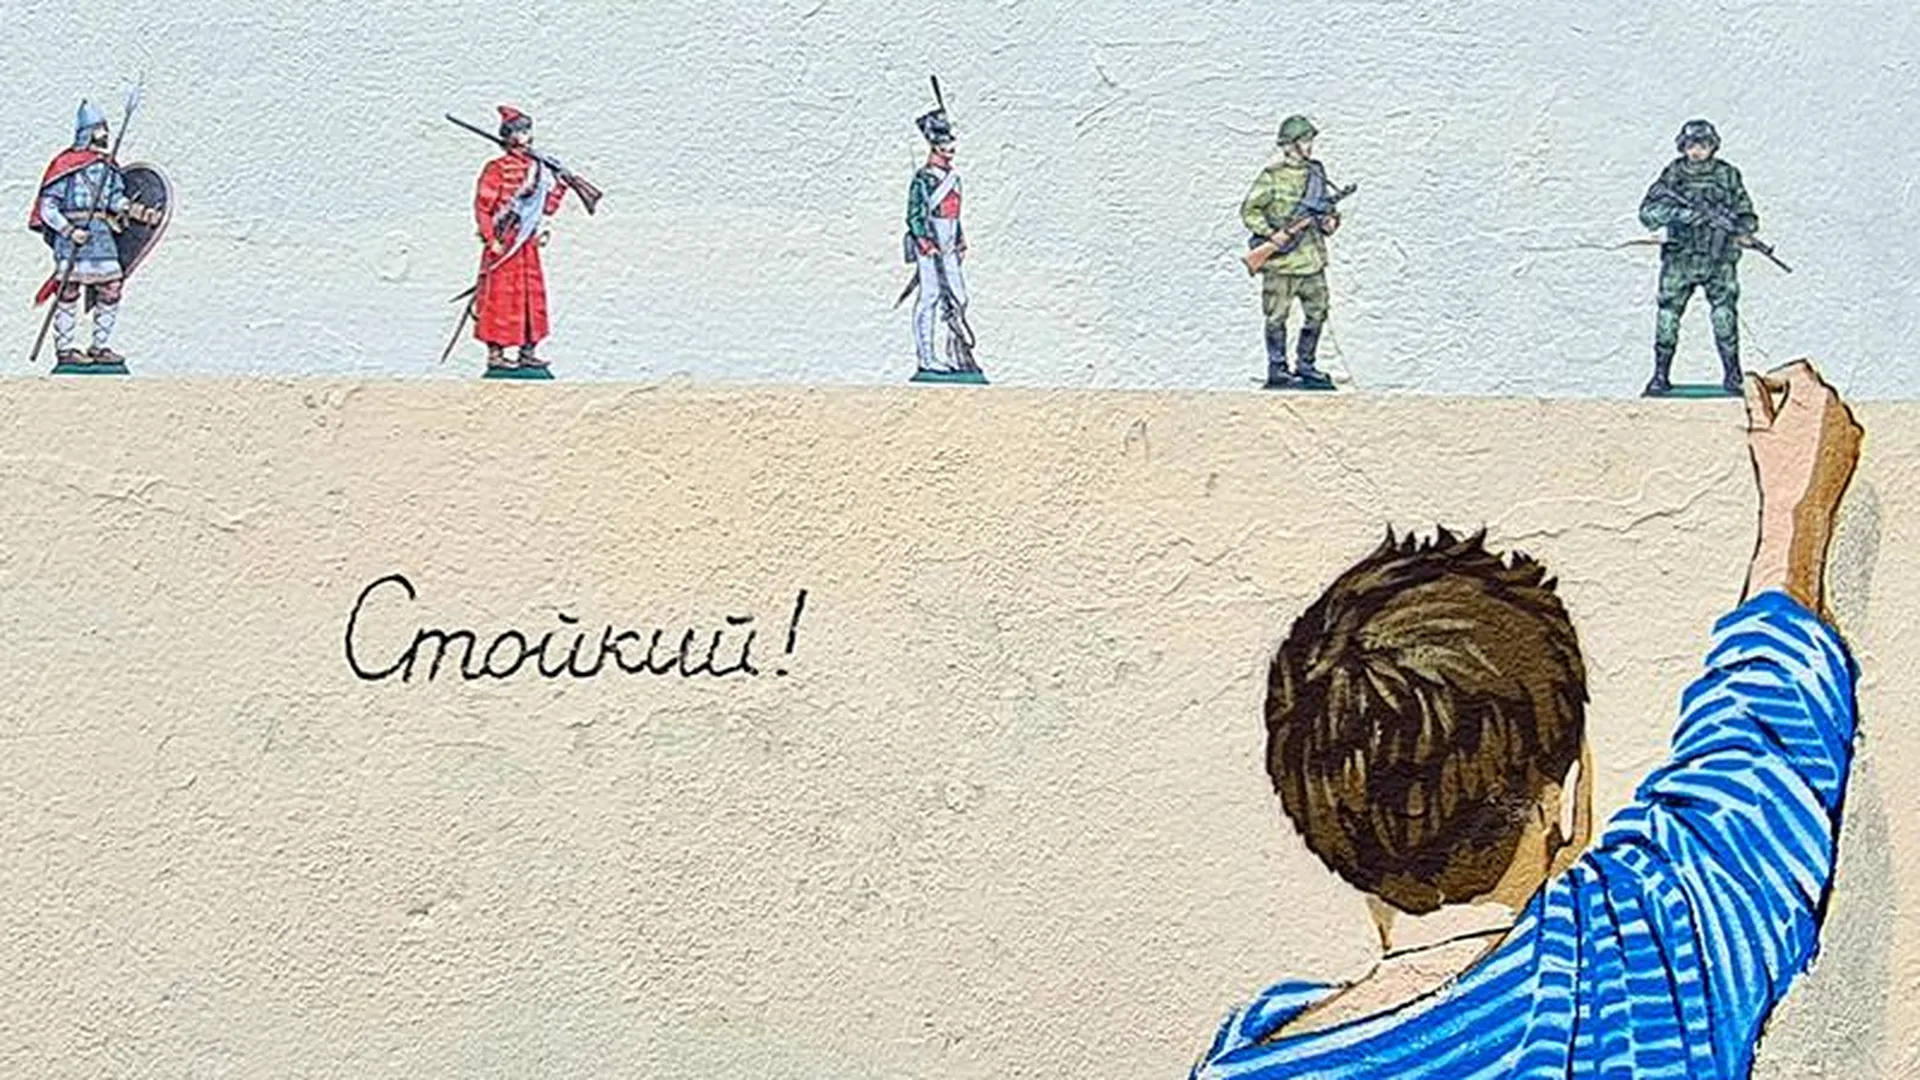 Художник из Химок создал в городе граффити «Стойкий!» в честь российских солдат